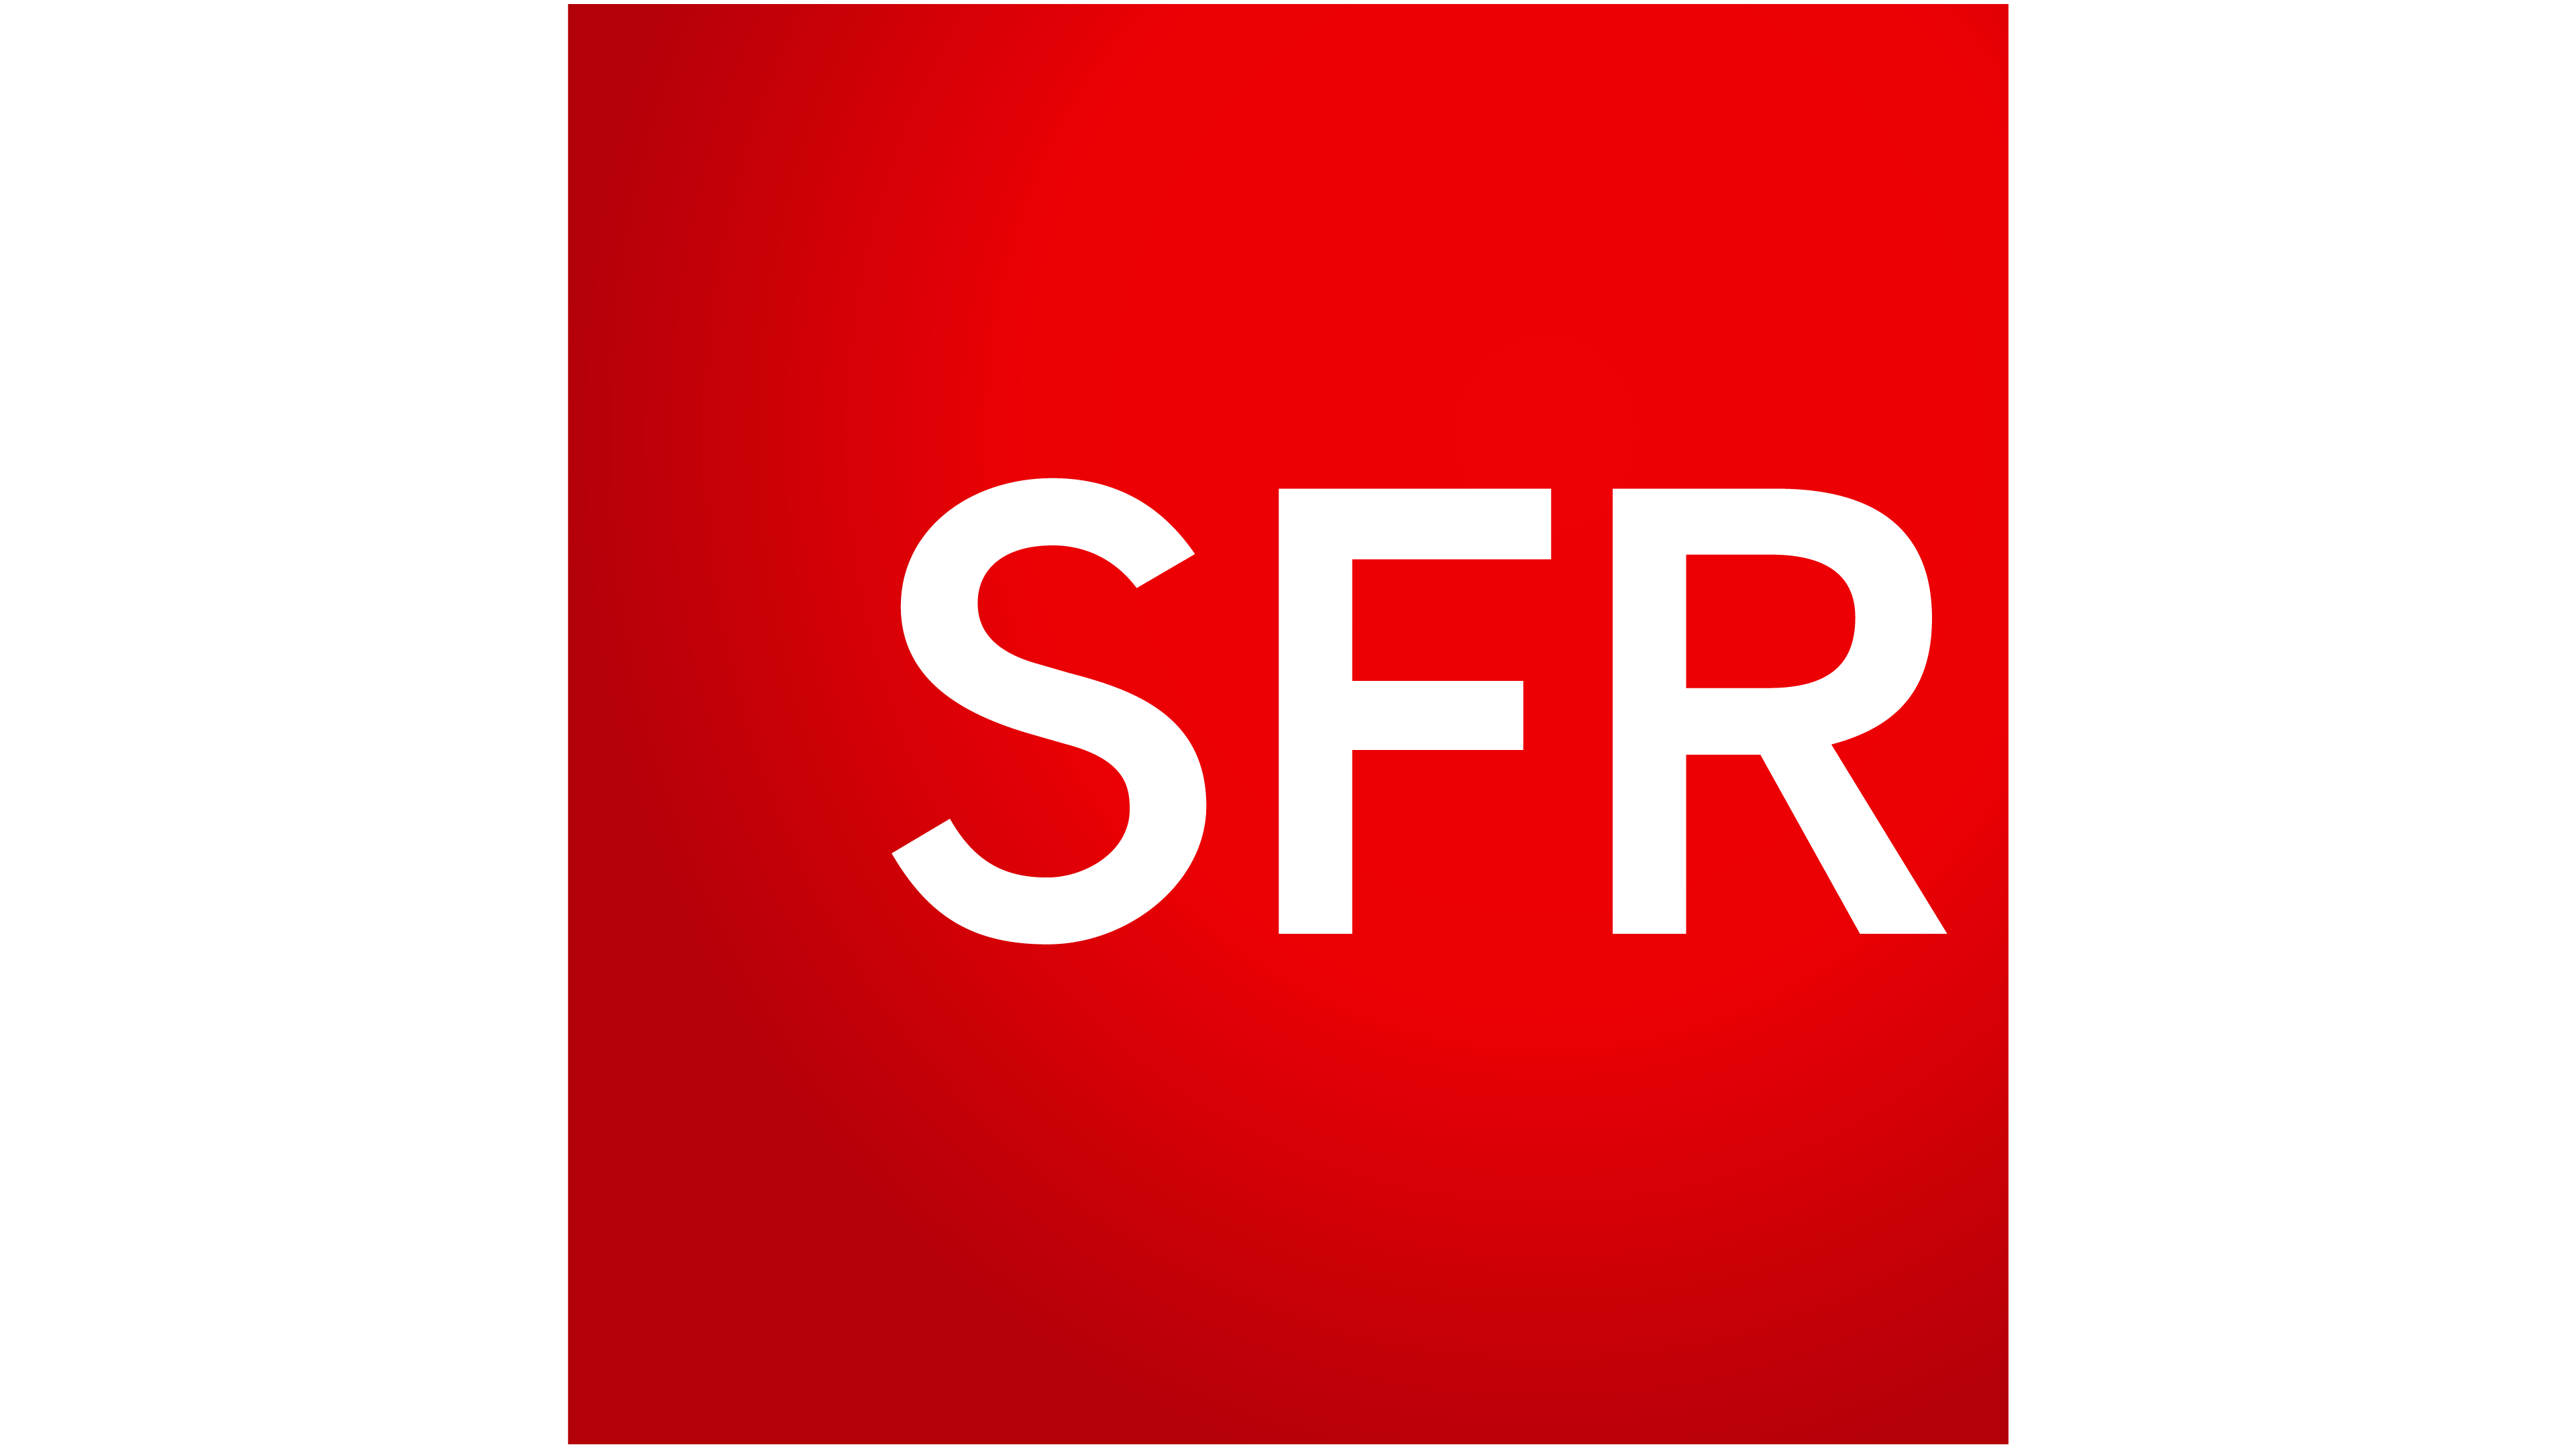 Откройте сфр. SFR. SFR logo. Логотип SFR цепи.